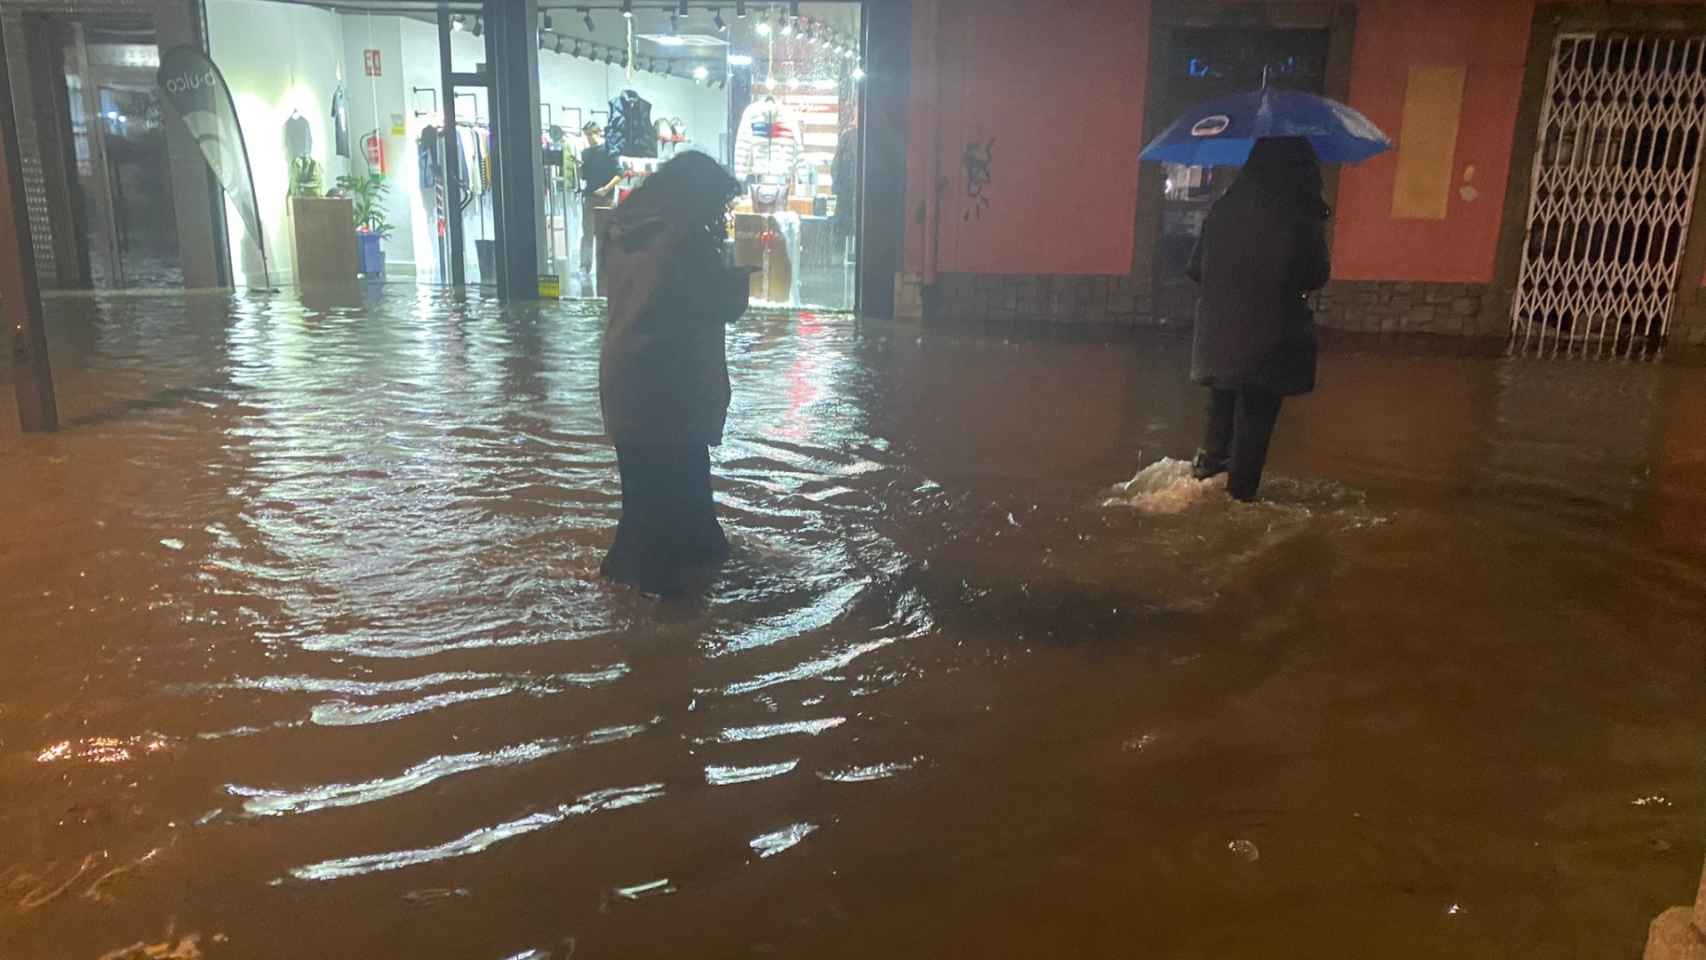 Inundaciones en las calles de Vilagarcía de Arousa (Pontevedra).